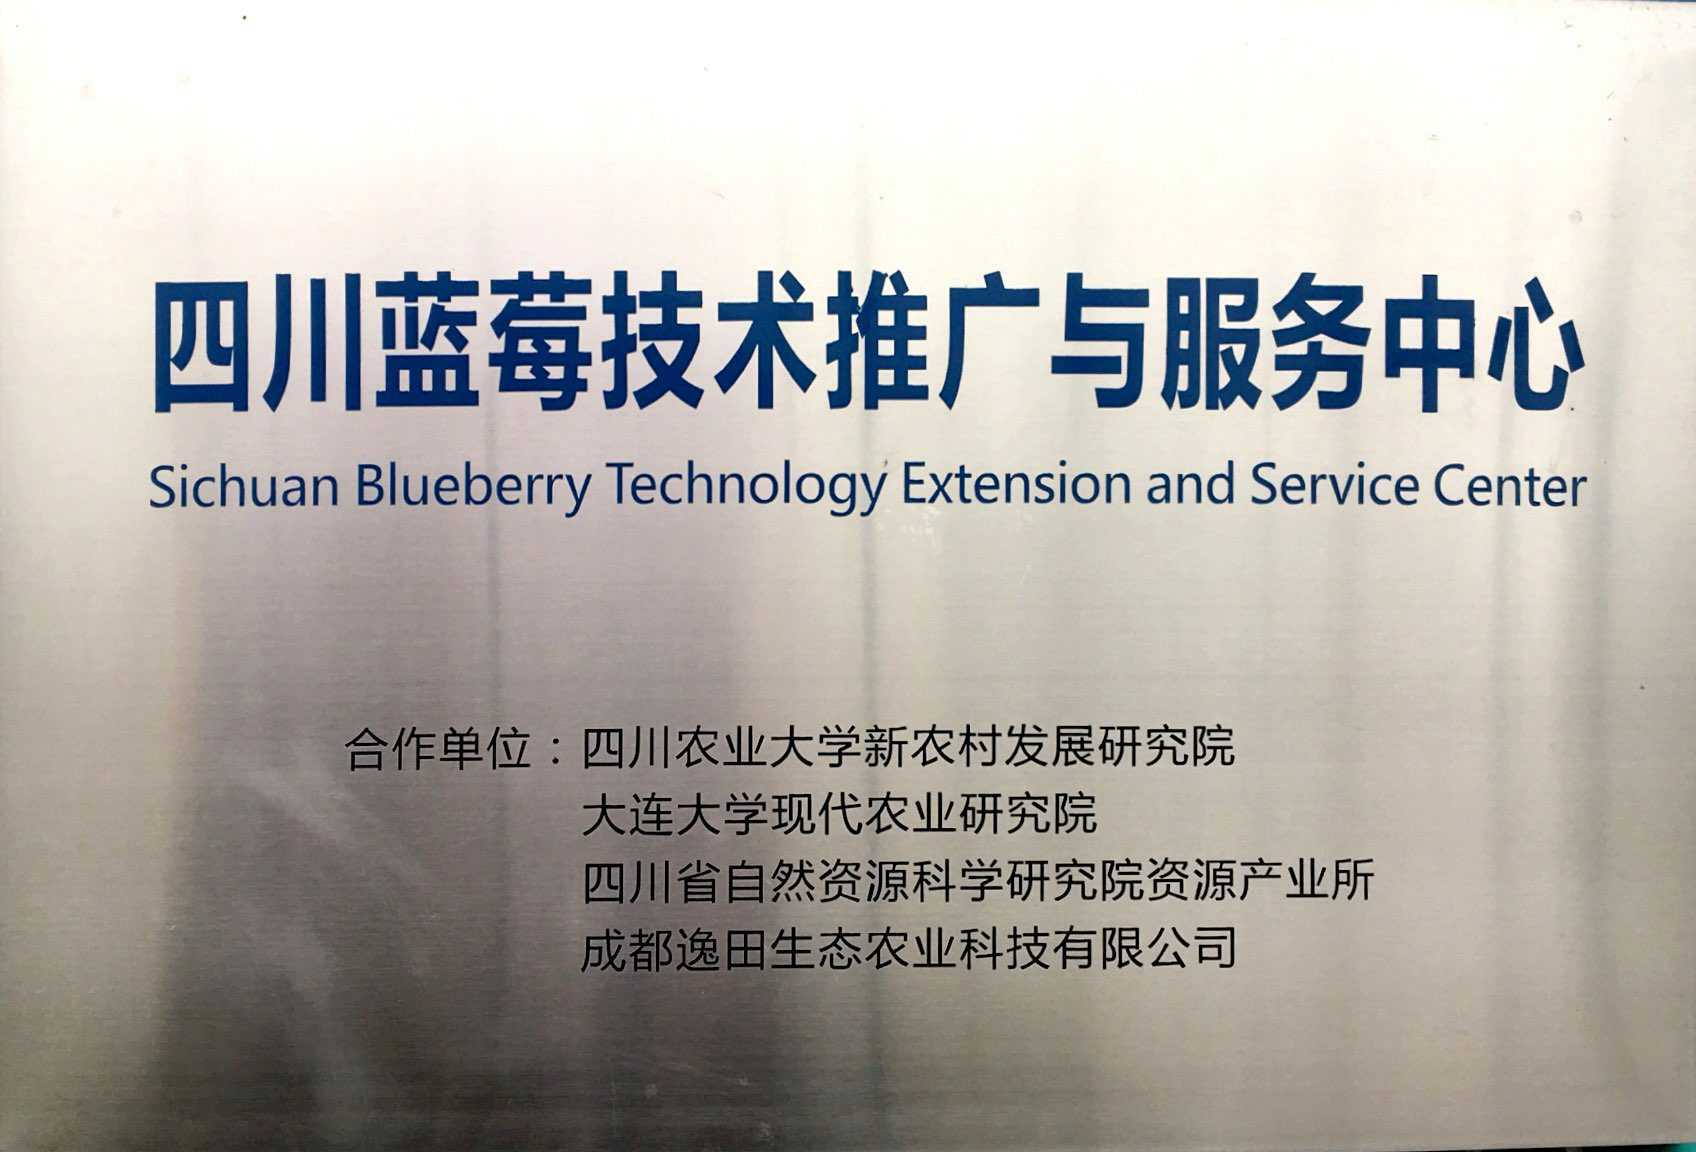 四川蓝莓推广与技术服务中心